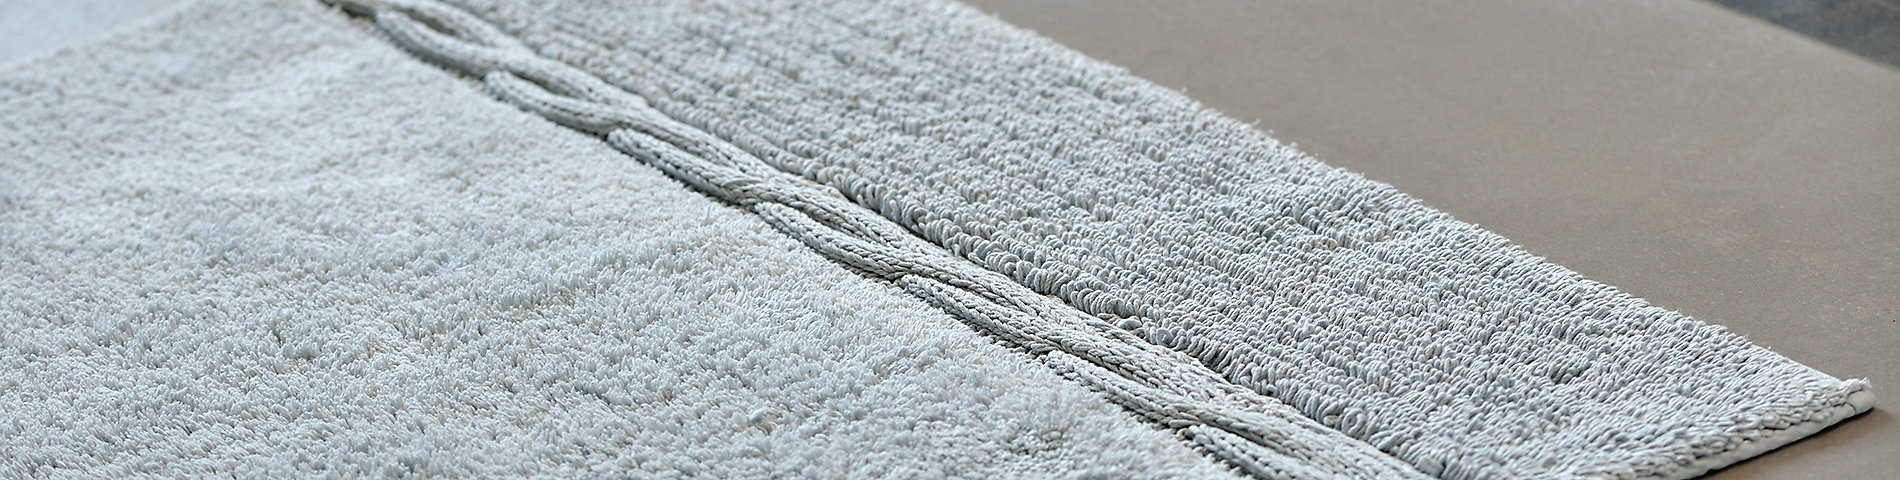 Badtextilien wie Handtücher und Badteppiche aus 100% Baumwolle